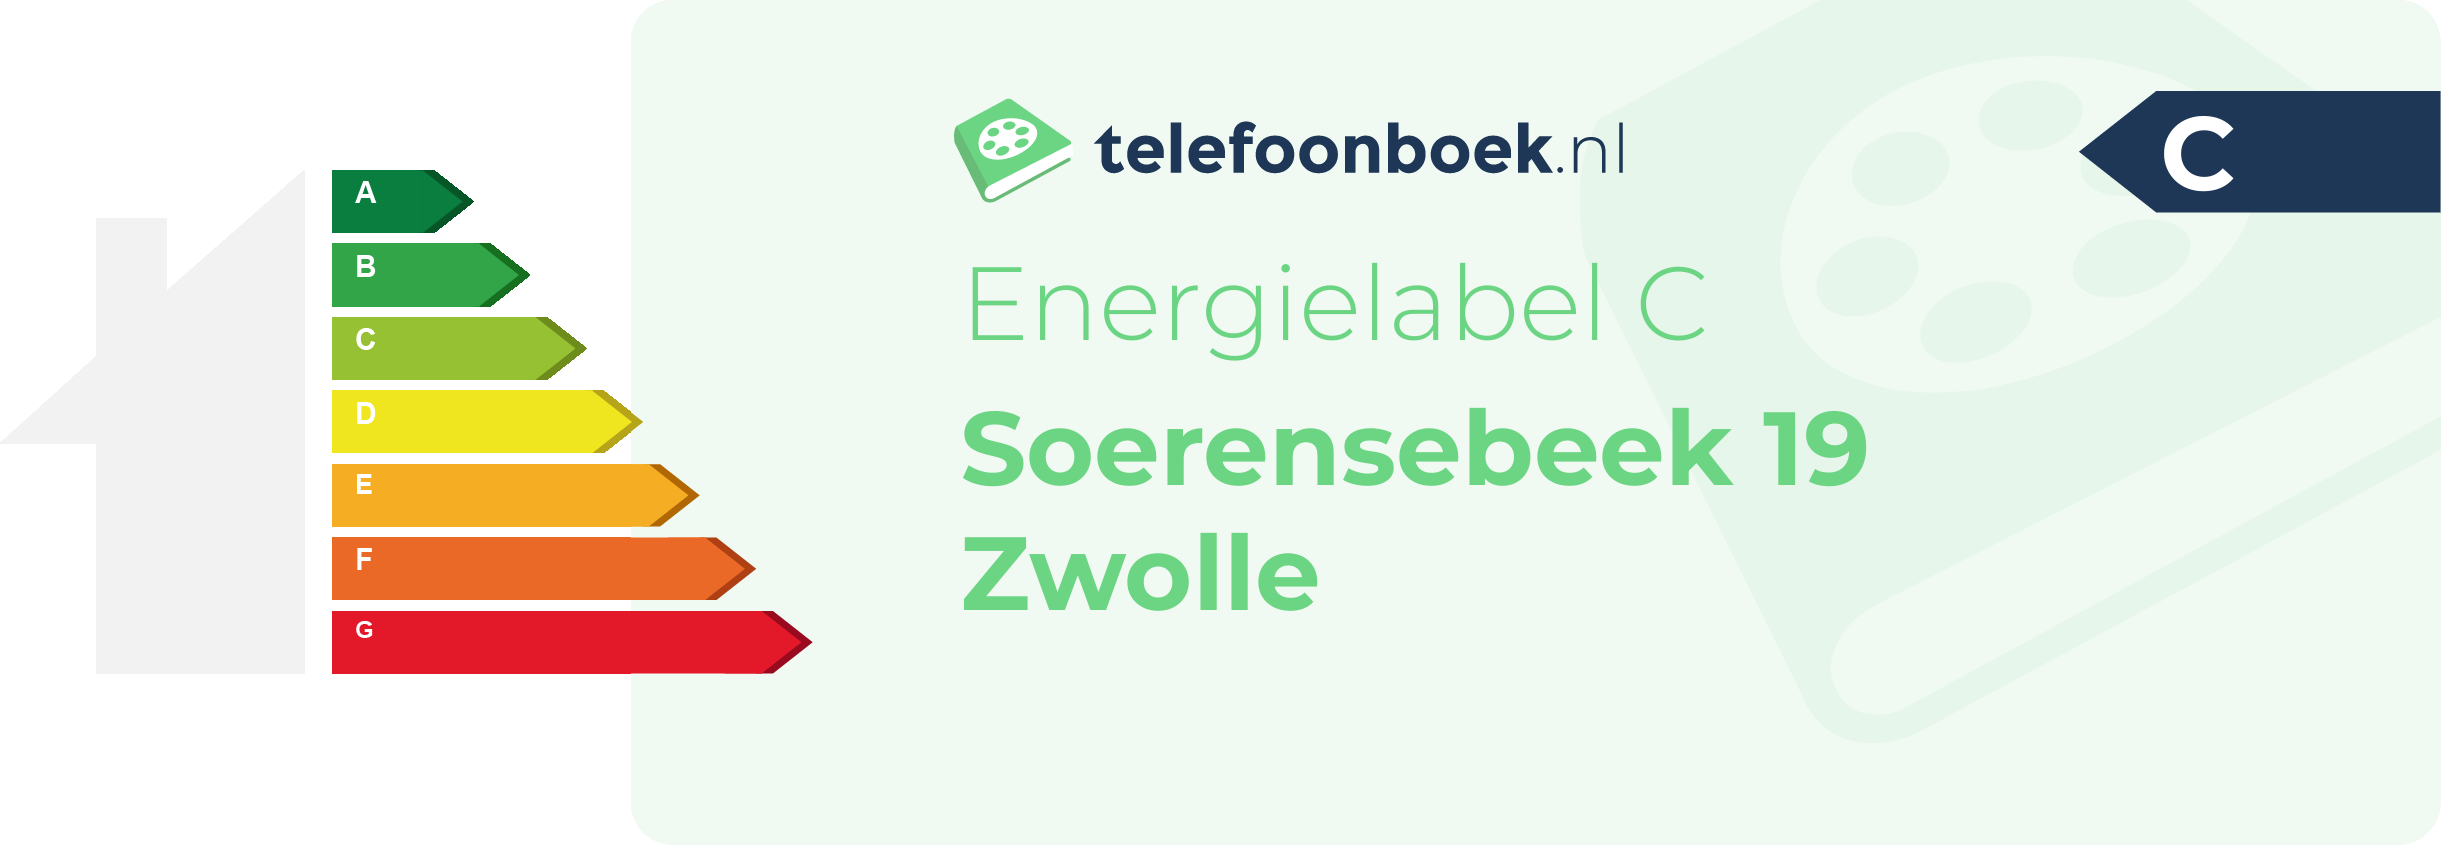 Energielabel Soerensebeek 19 Zwolle